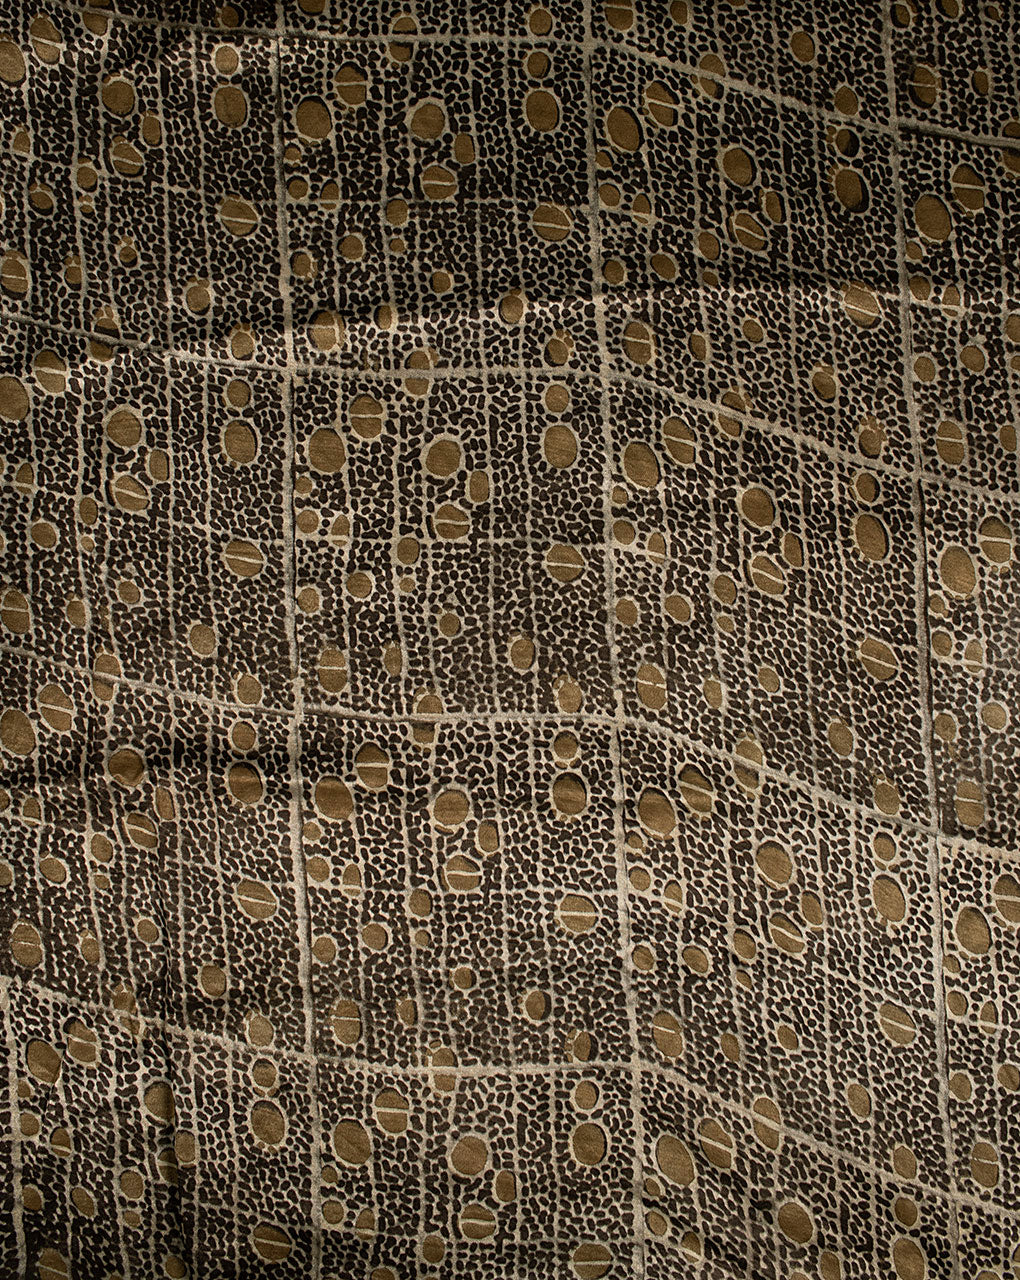 Hand Block Mashru Silk Fabric